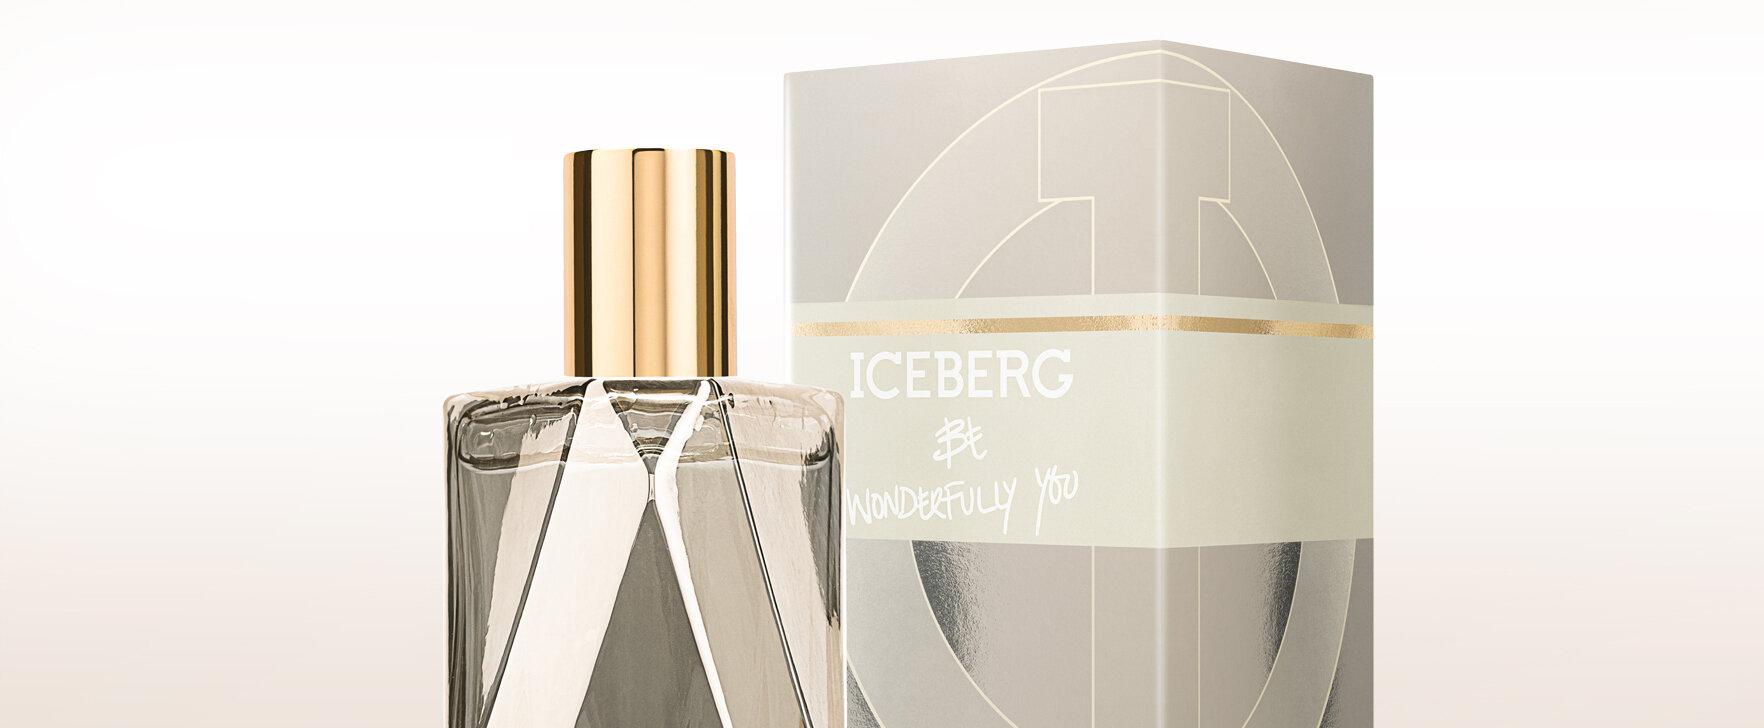 Eine Ode an unkonventionelle Schönheit: Das neue Eau de Toilette „Be Wonderfully You“ von Iceberg 